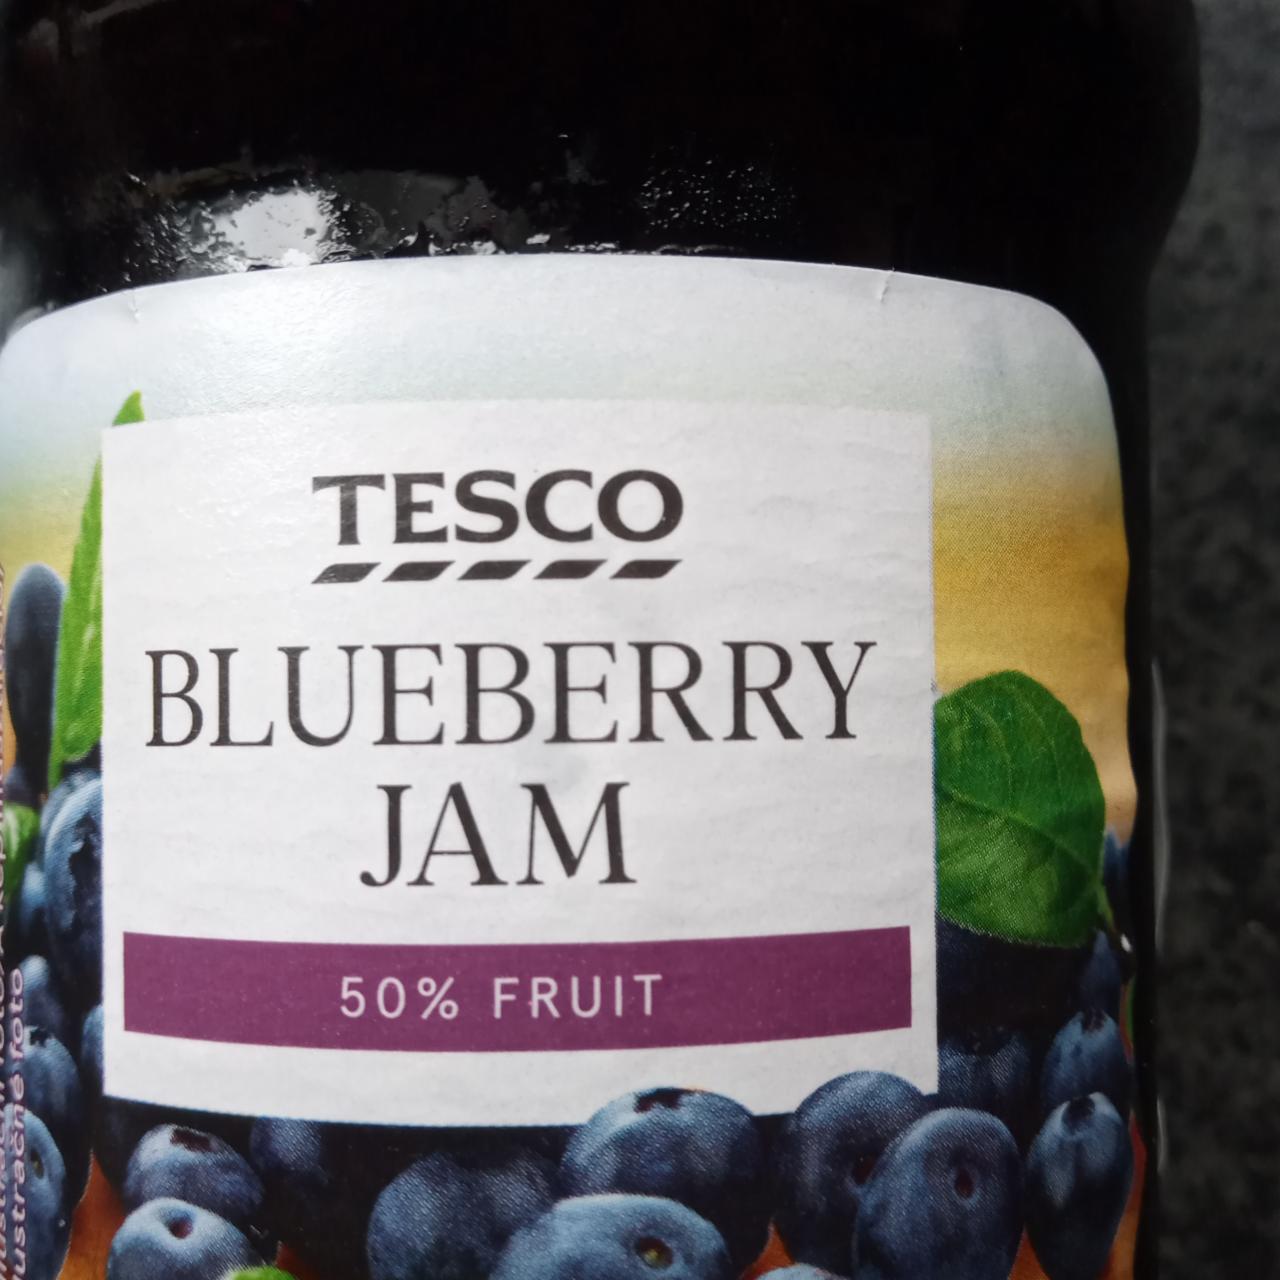 Fotografie - Blueberry Jam 50% fruit Tesco